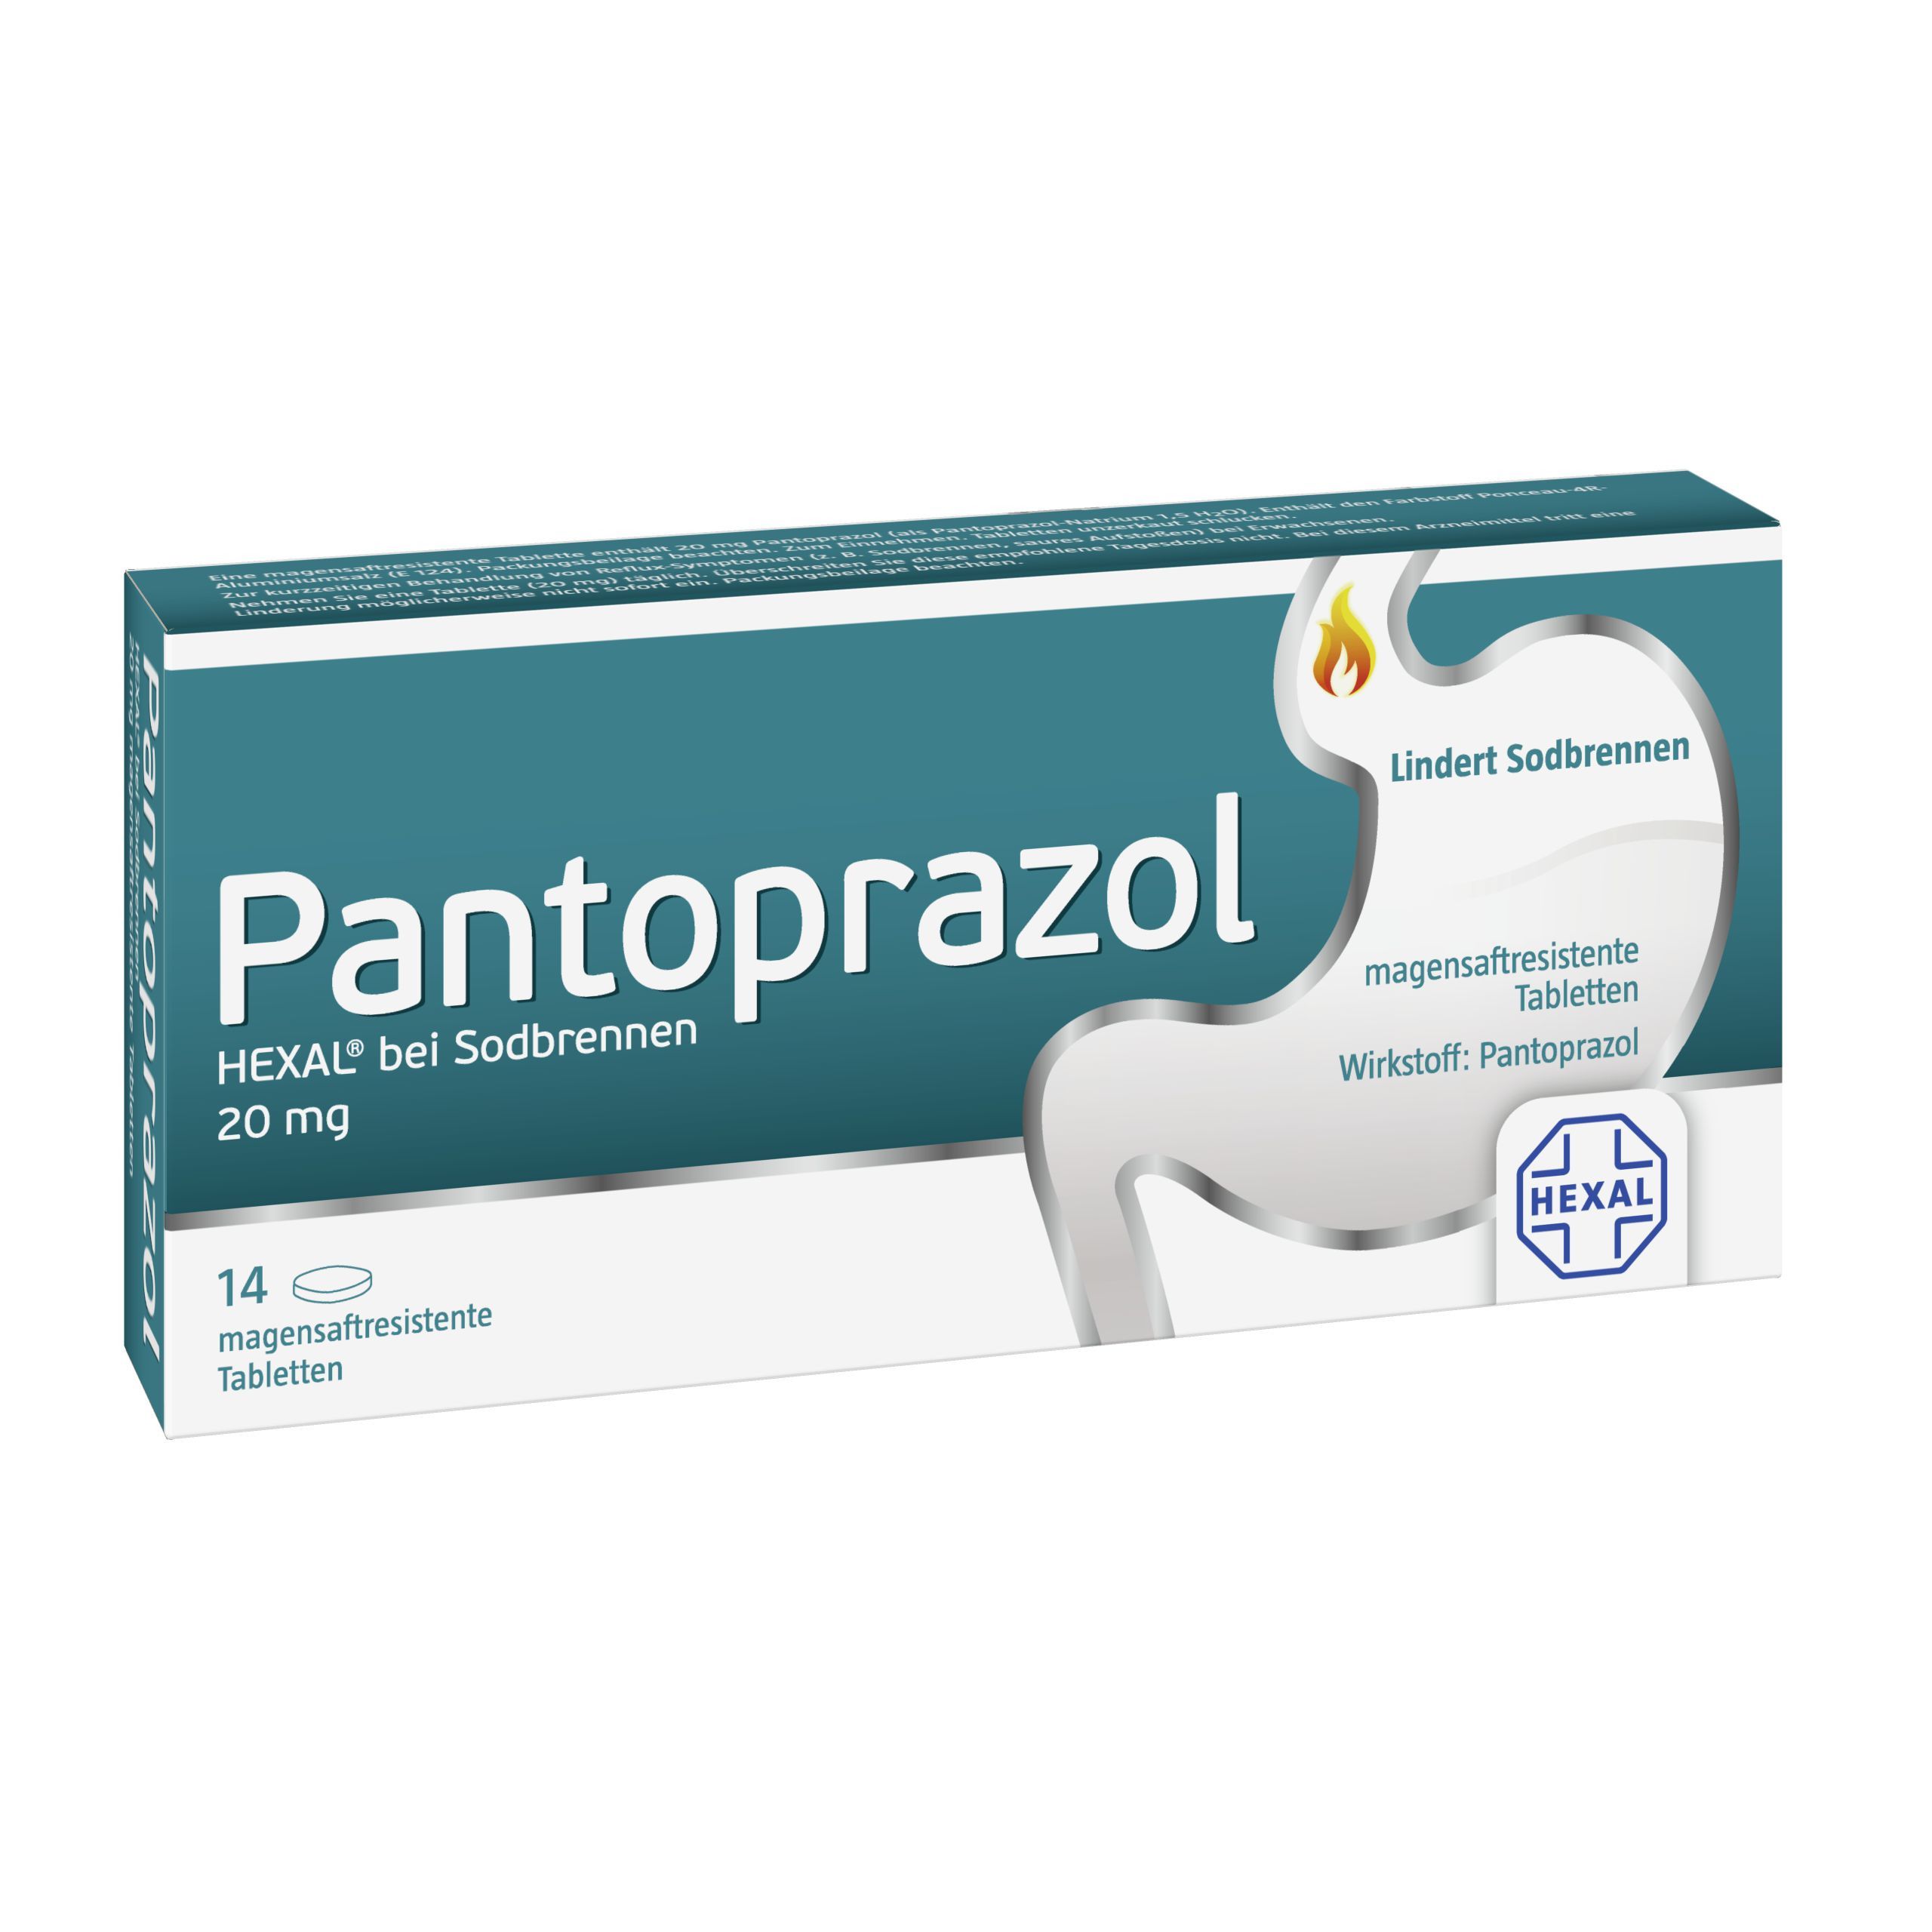 Pantoprazol HEXAL® bei Sodbrennen 20 mg